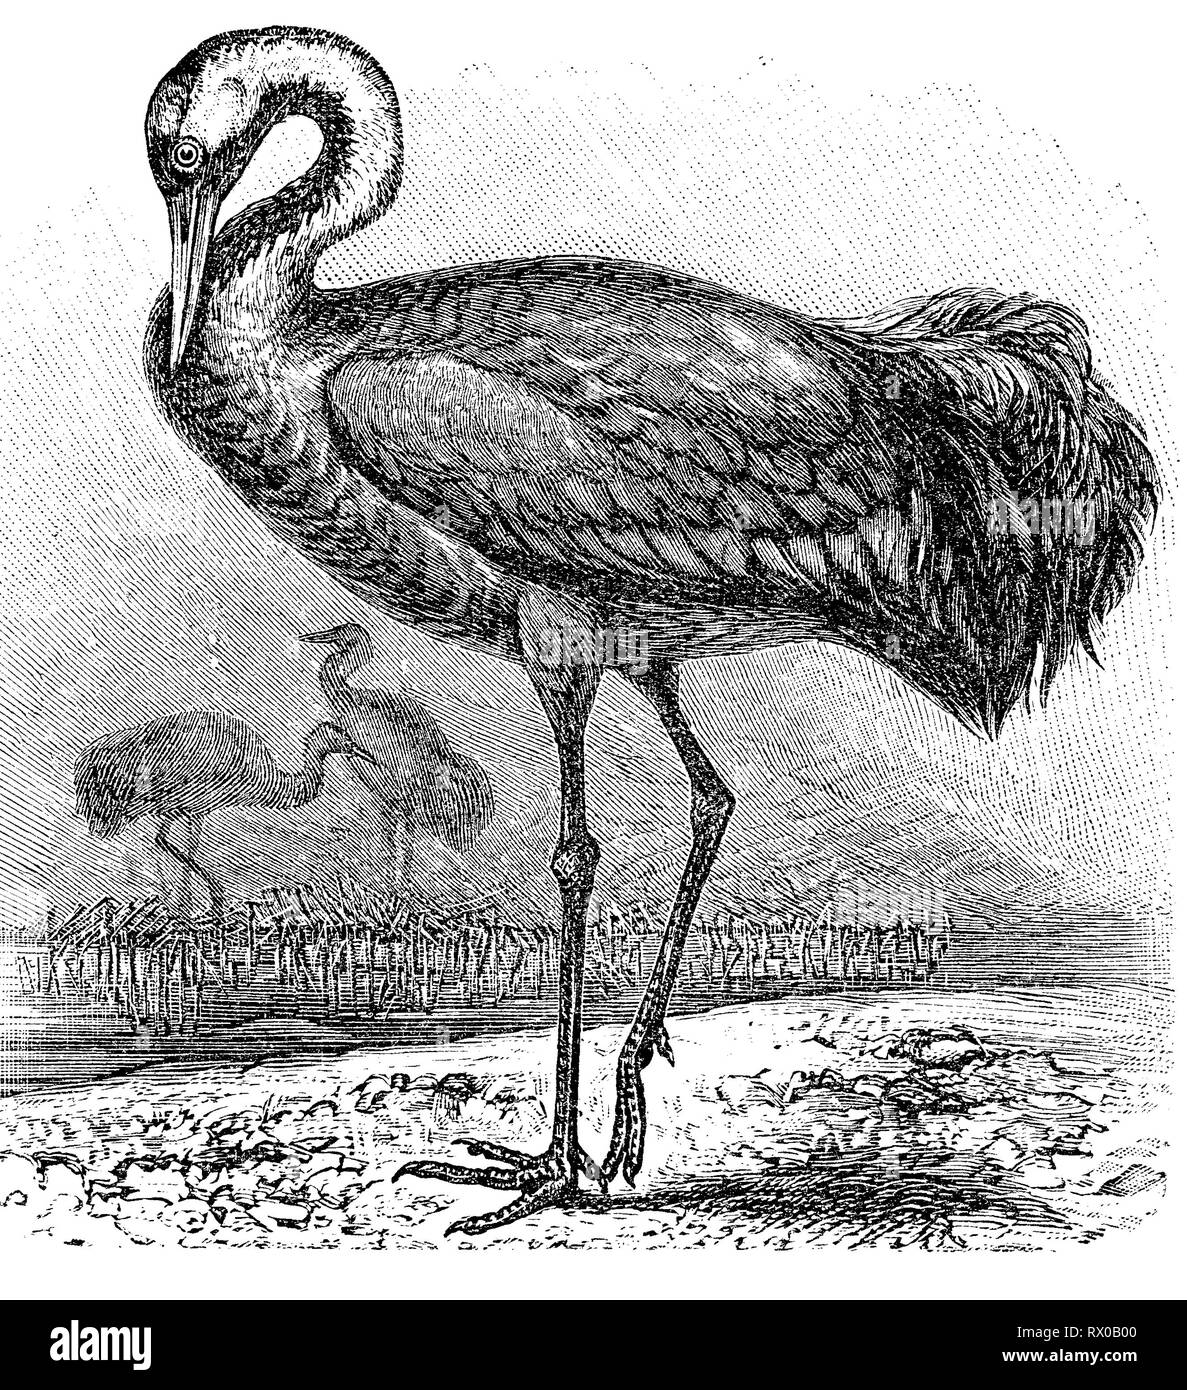 Kranich, Grus grus, auch Grauer Kranich oder Eurasischer Kranich / common crane, Grus grus, also known as the Eurasian crane Stock Photo